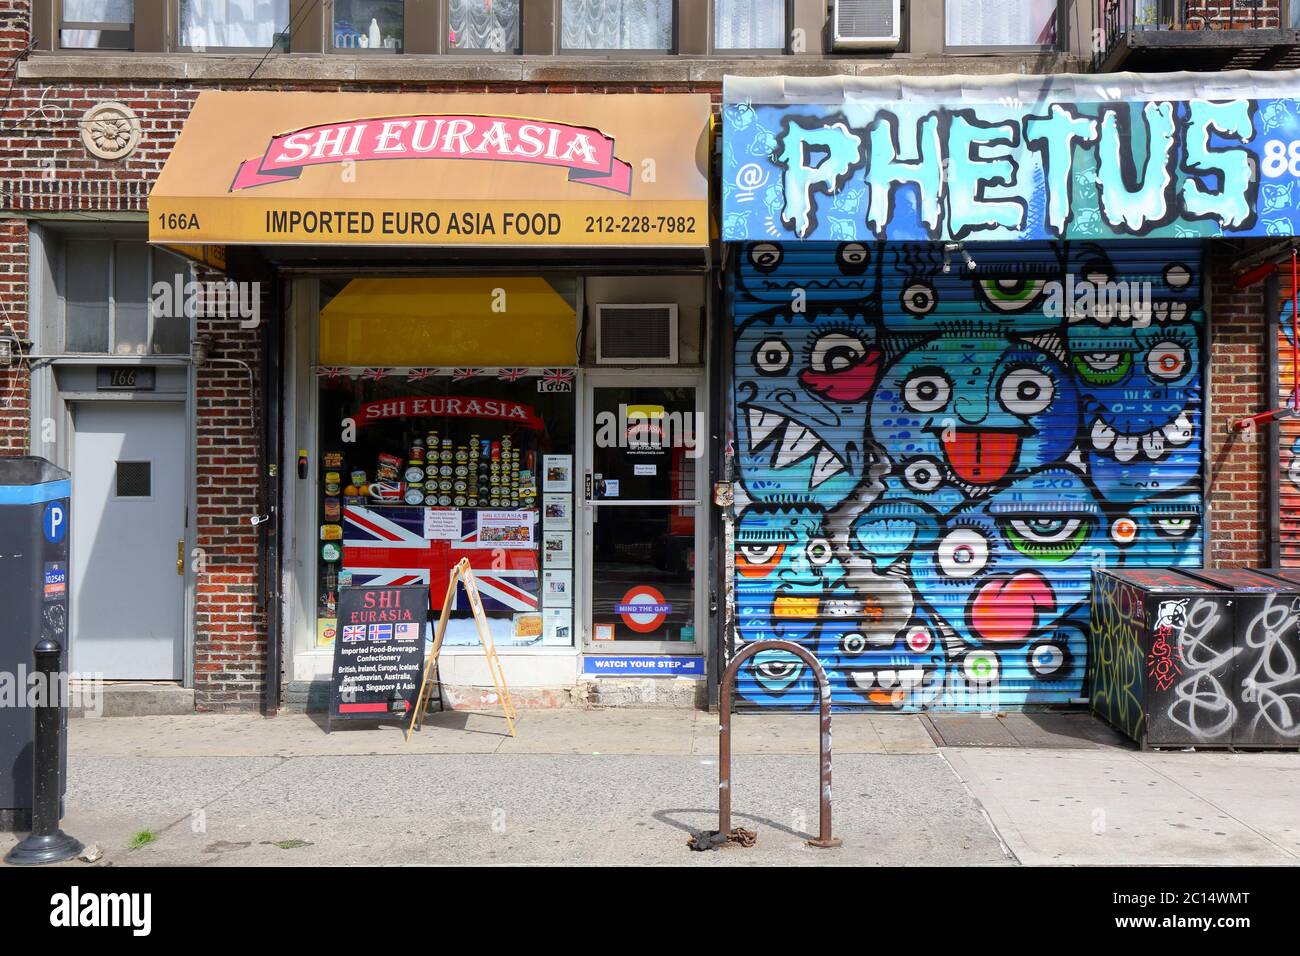 [Front de vente historique] Shi Eurasia, 166A Allen St, New York, NYC photo d'un magasin alimentaire britannique importé dans le Lower East Side de Manhattan. Banque D'Images